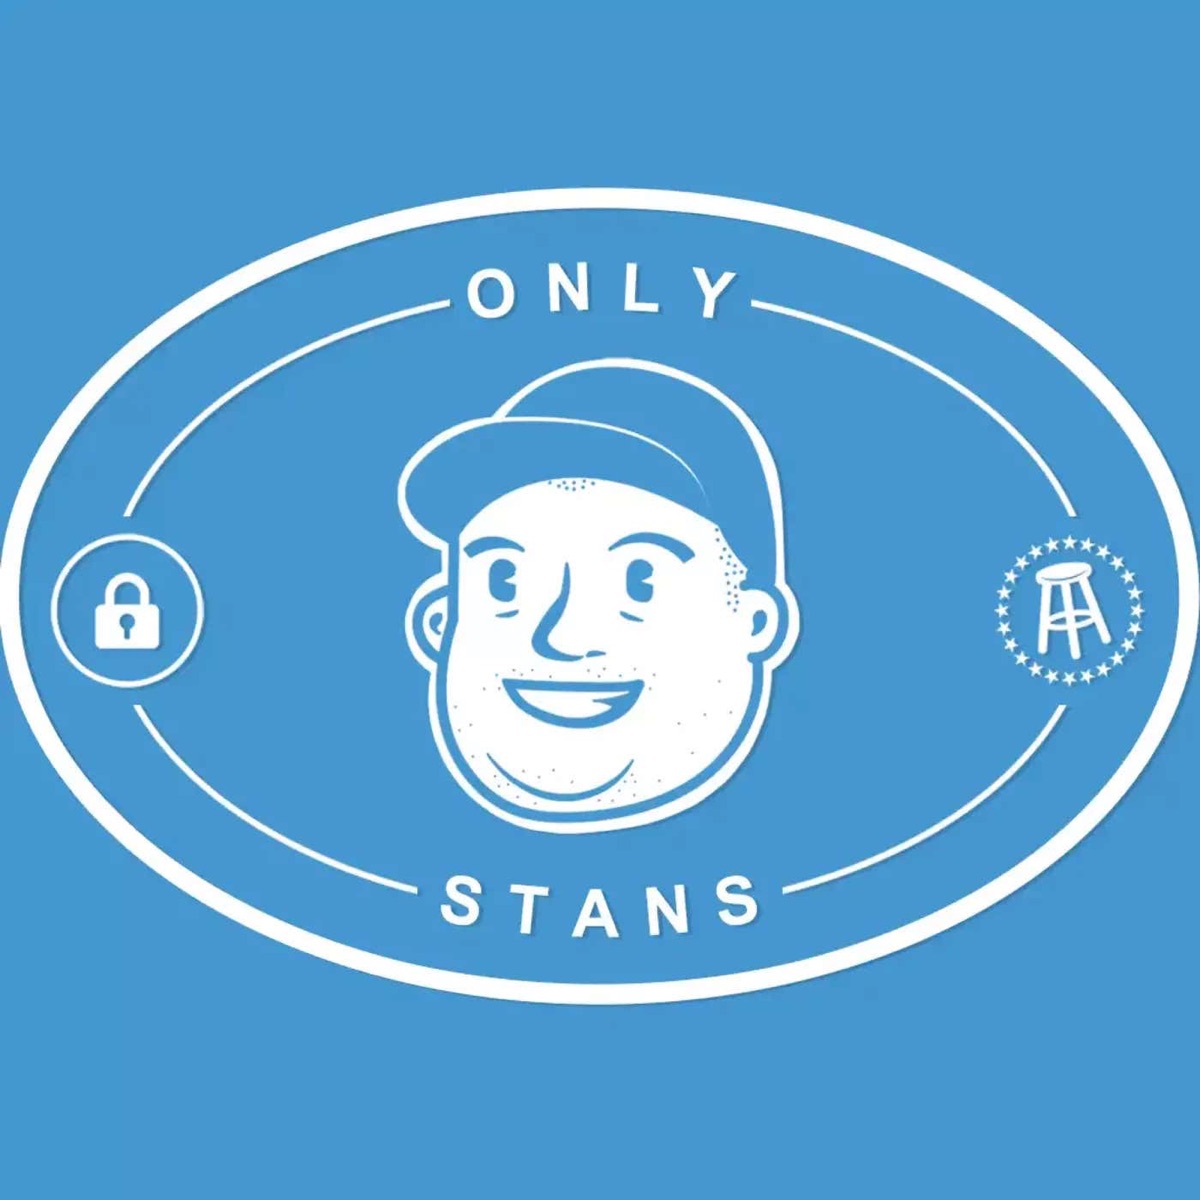 Only Stans â€“ Podcast â€“ Podtail